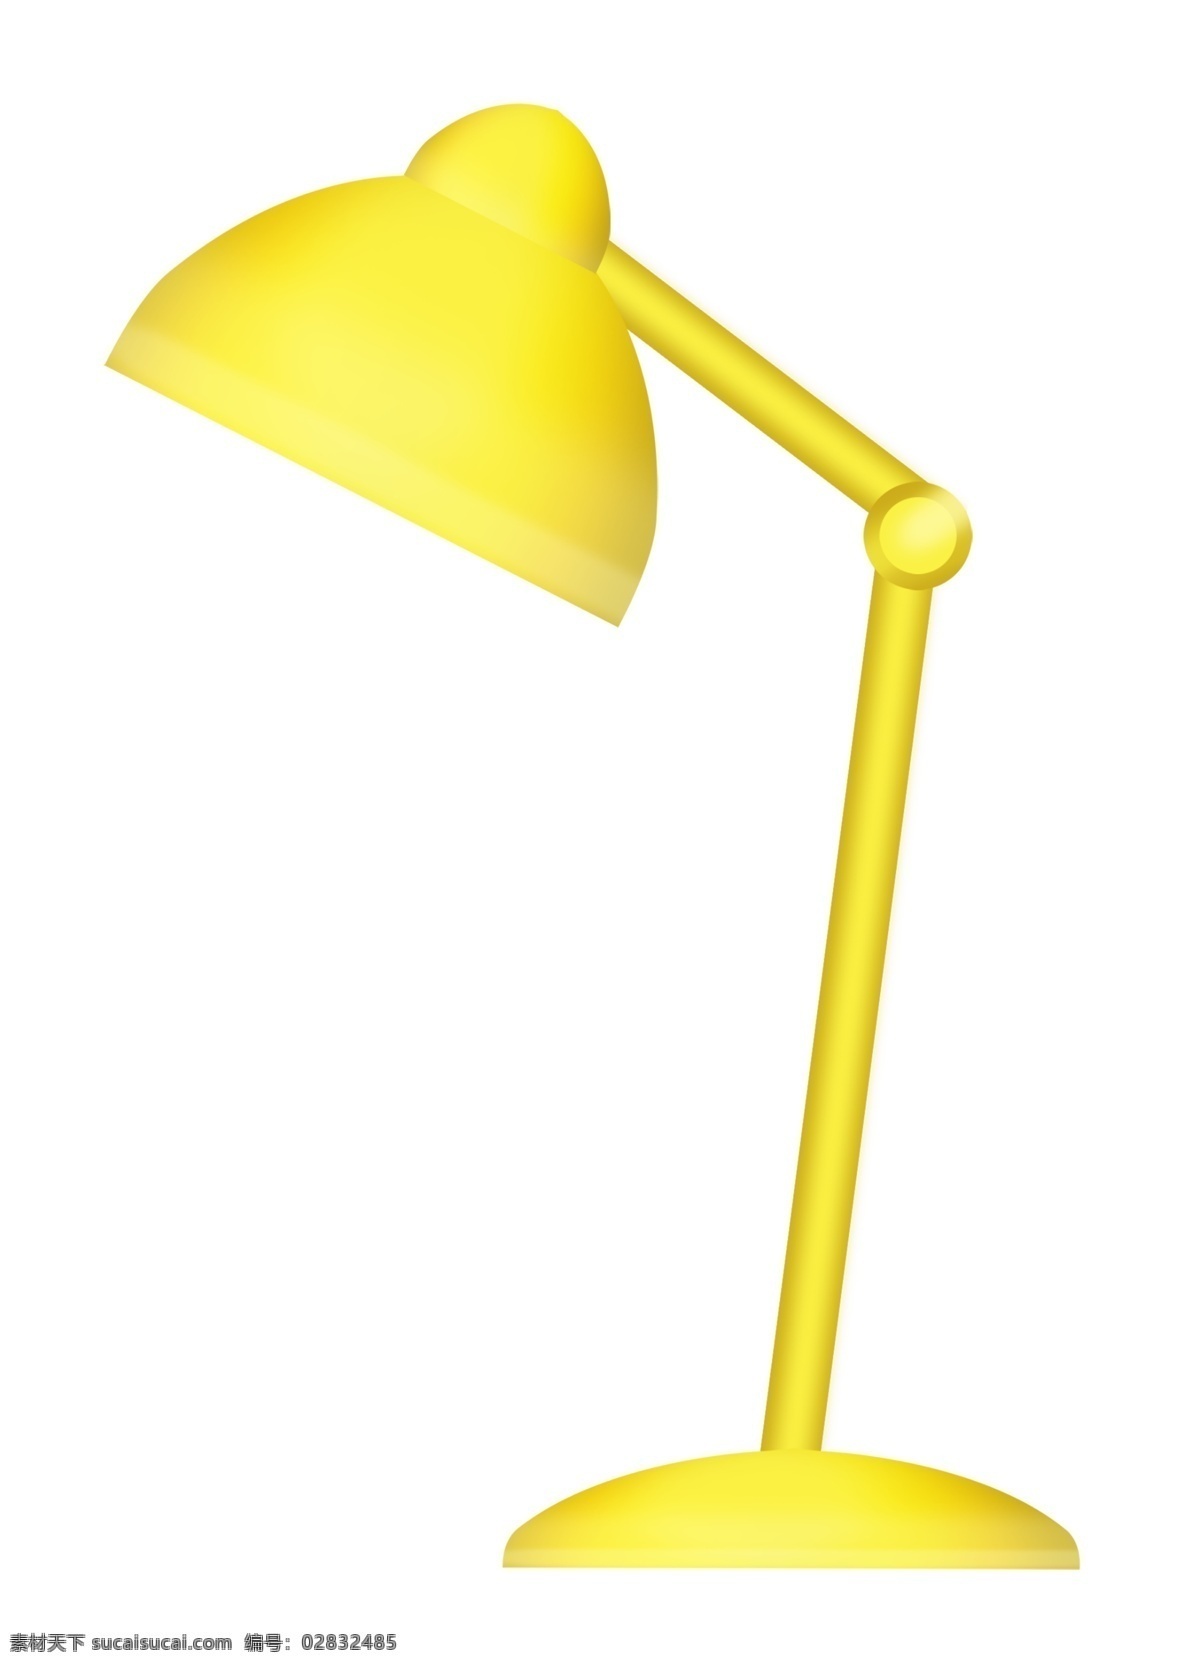 黄色 床头 台灯 插画 黄色台灯 一盏黄色台灯 一盏台灯 床头灯 学习台灯 插图 灯